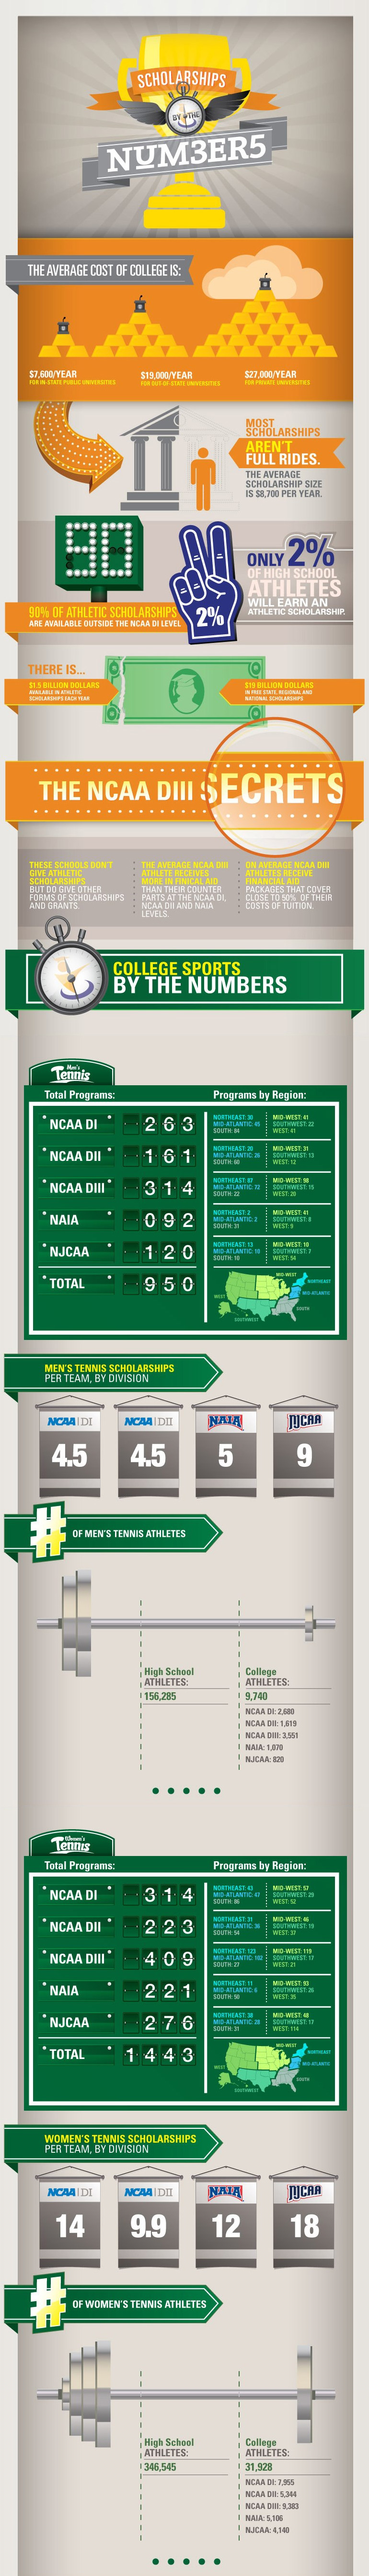 Bourse sportive USA en tennis : infographie et chiffres clés